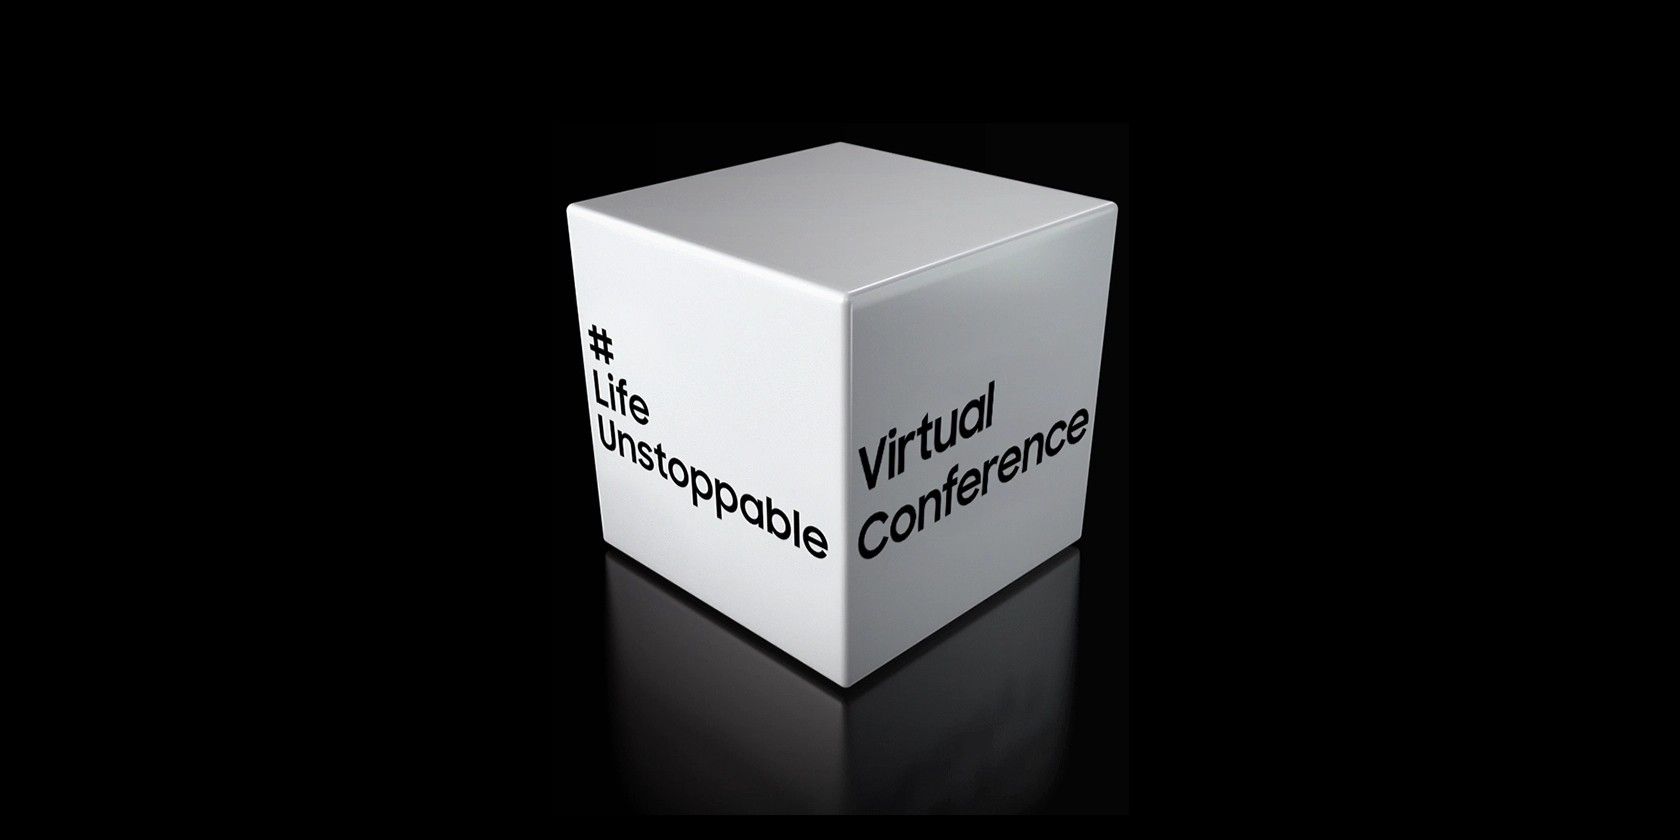 samsung life unstoppable virtual conference ifa2020 - Samsung presenta nuovi prodotti all’evento Life Unstoppable IFA 2020